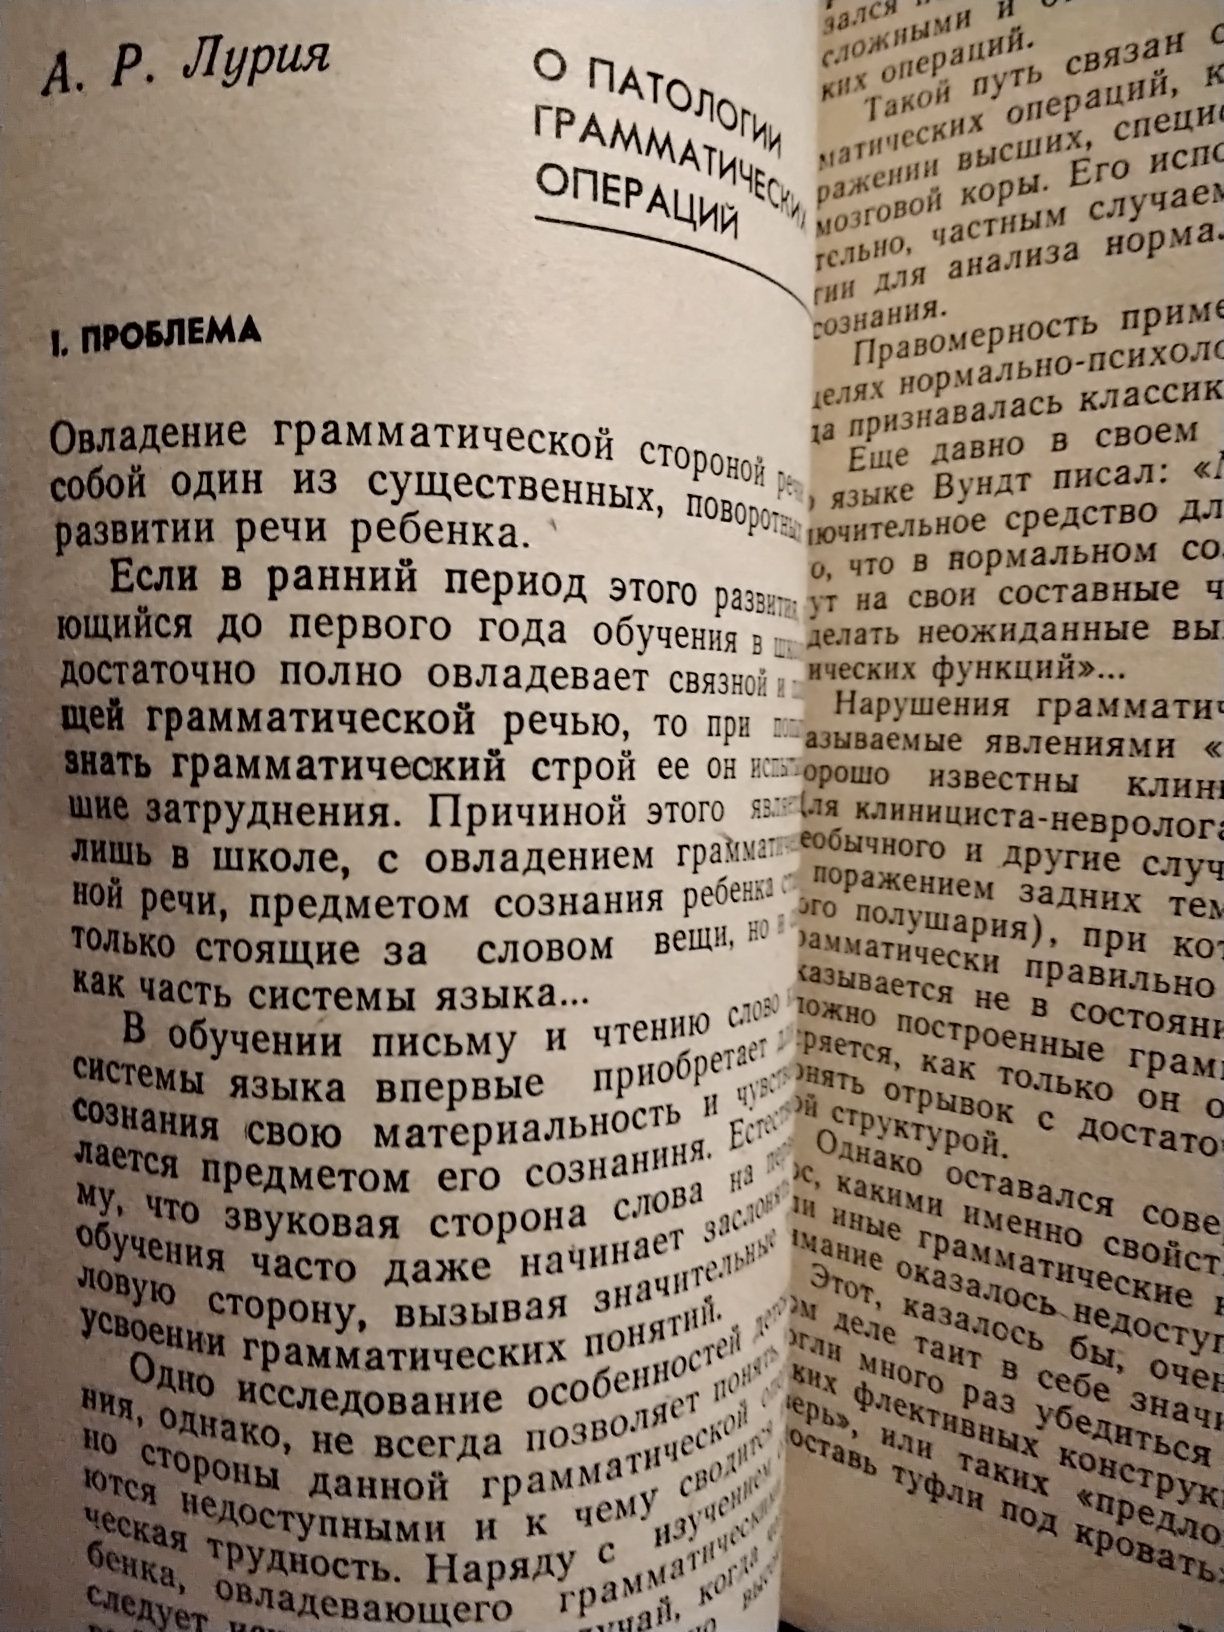 Афазия и востановительное обучение Тексты Лурия и др. 1983